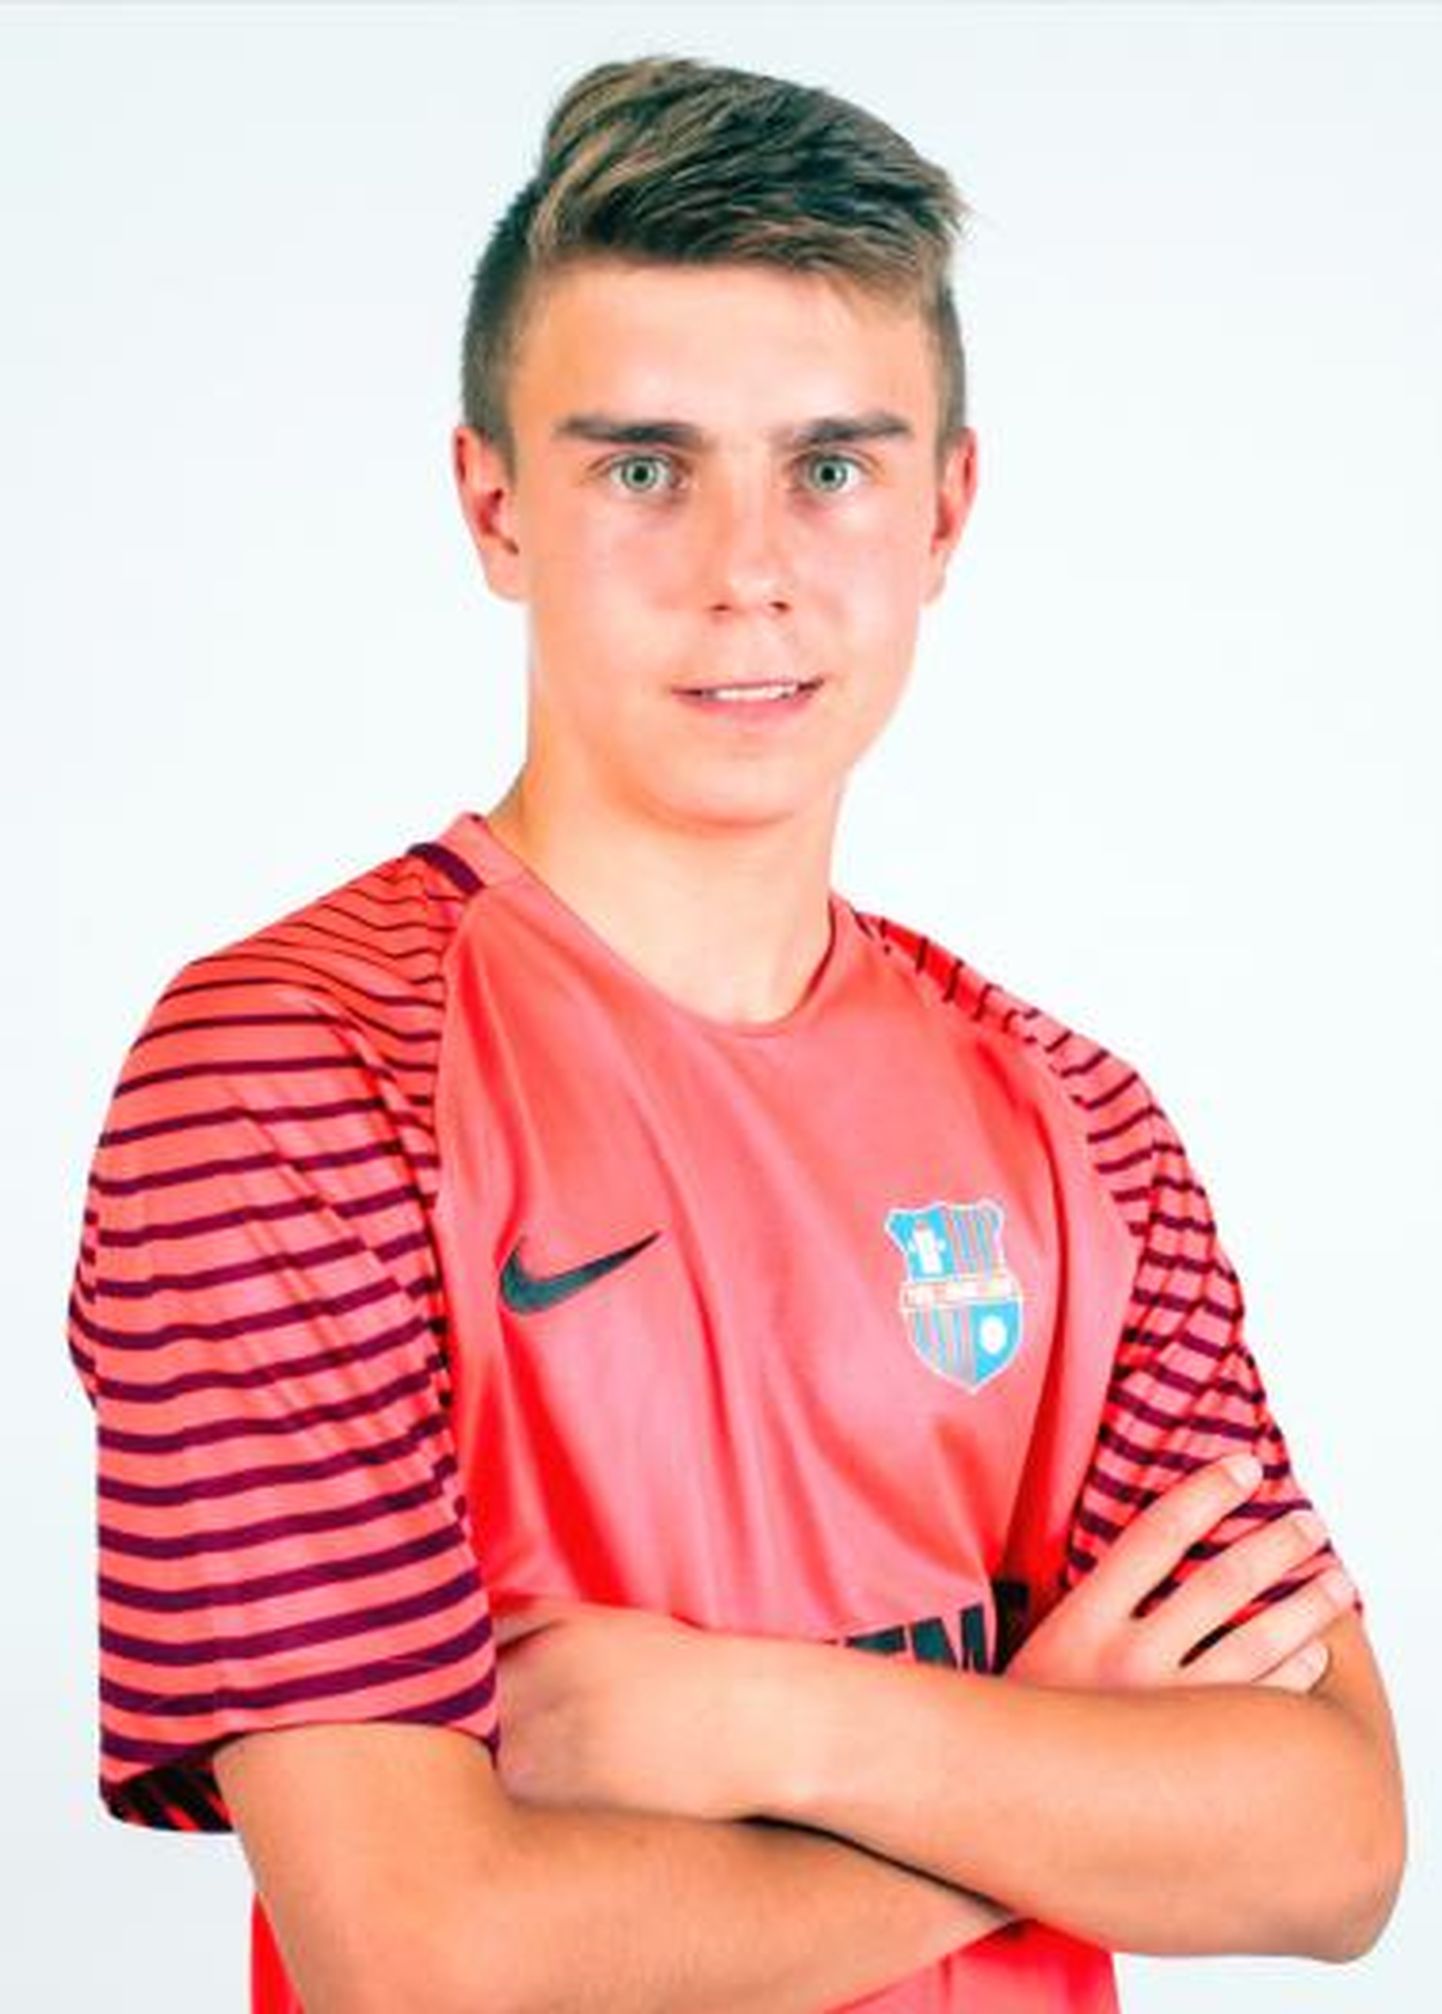 Eesti U19 koondise väravavaht Rene Merilo on Kohtla-Järve klubi JK Järve kasvandik, kes praegu kuulub Paide linnameeskonda.